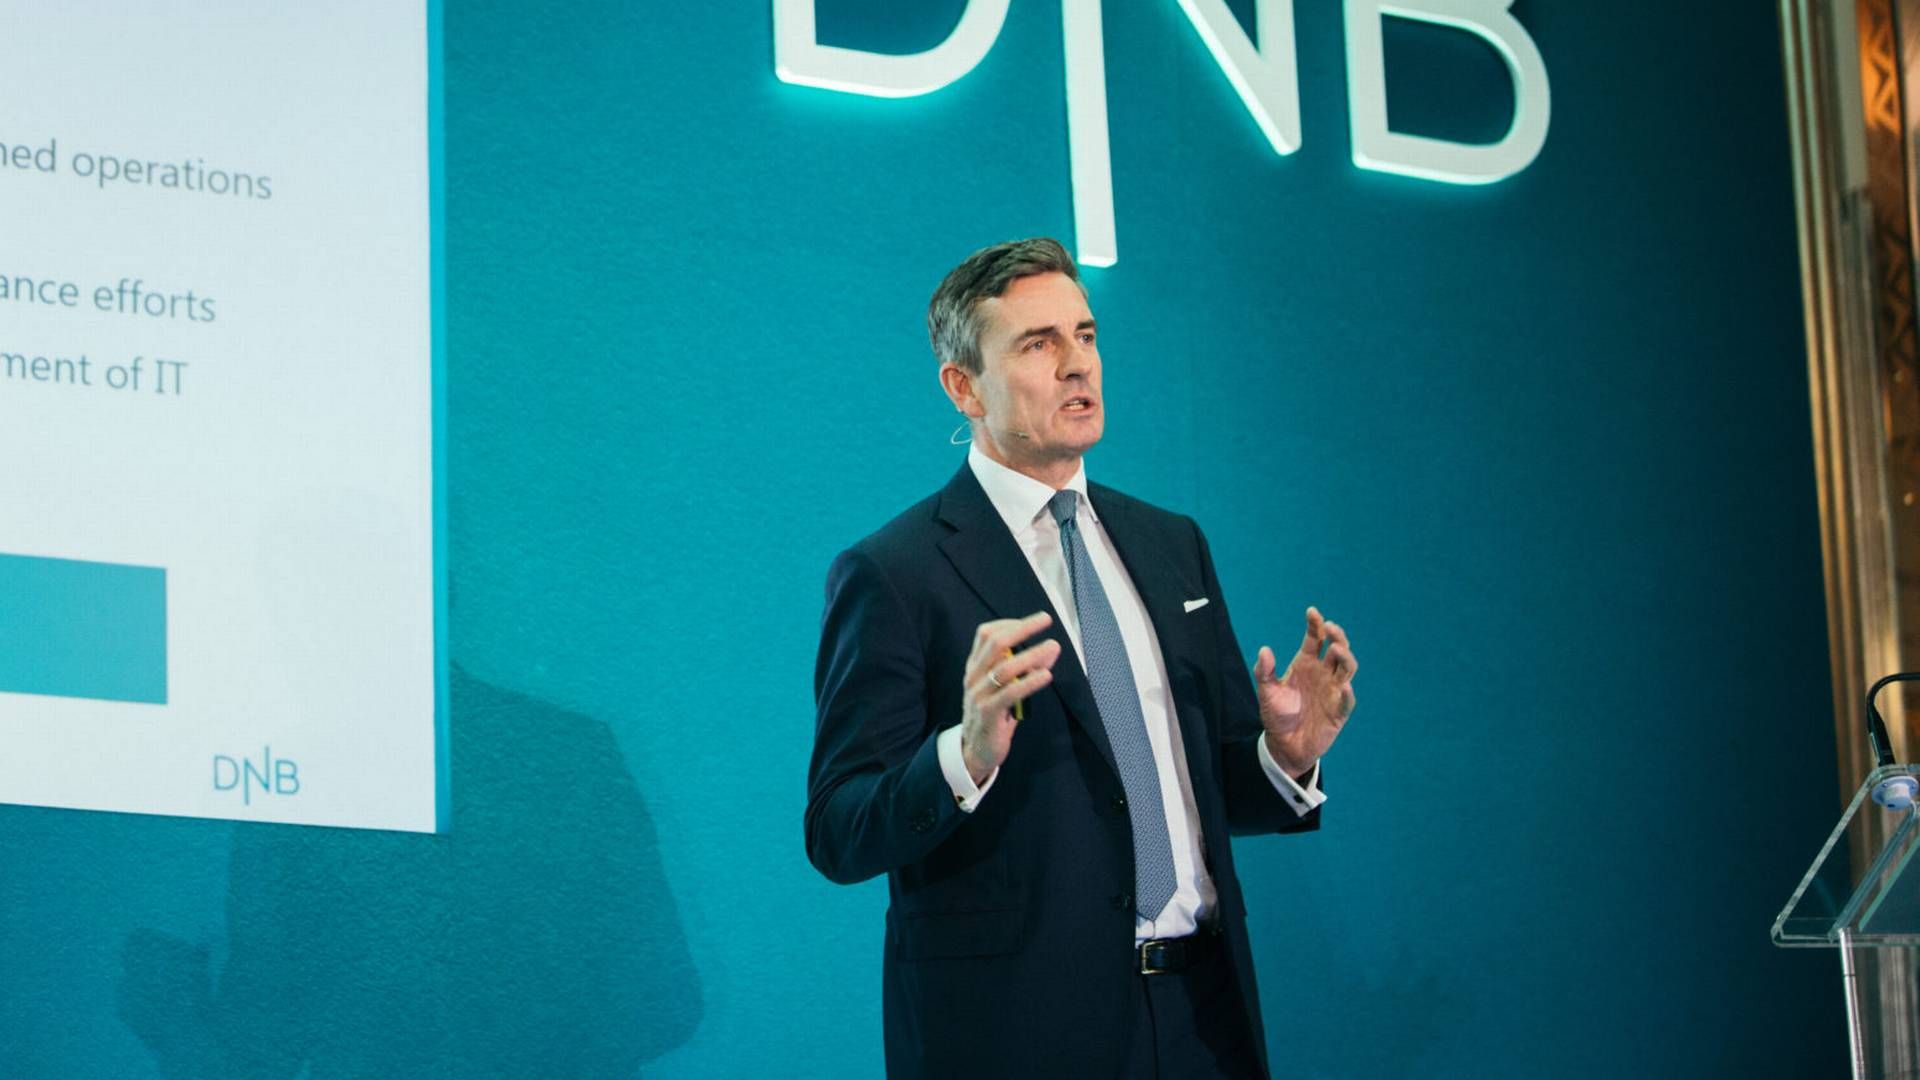 I VEKST: – Vi har 35 prosent markedsandel i SMB-markedet og ønsker å styrke den posisjonen, både den fysiske og digitale betjeningen av dette segmentet, sier konserndirektør Corporate Banking, Harald Serck-Hanssen, i DNB.